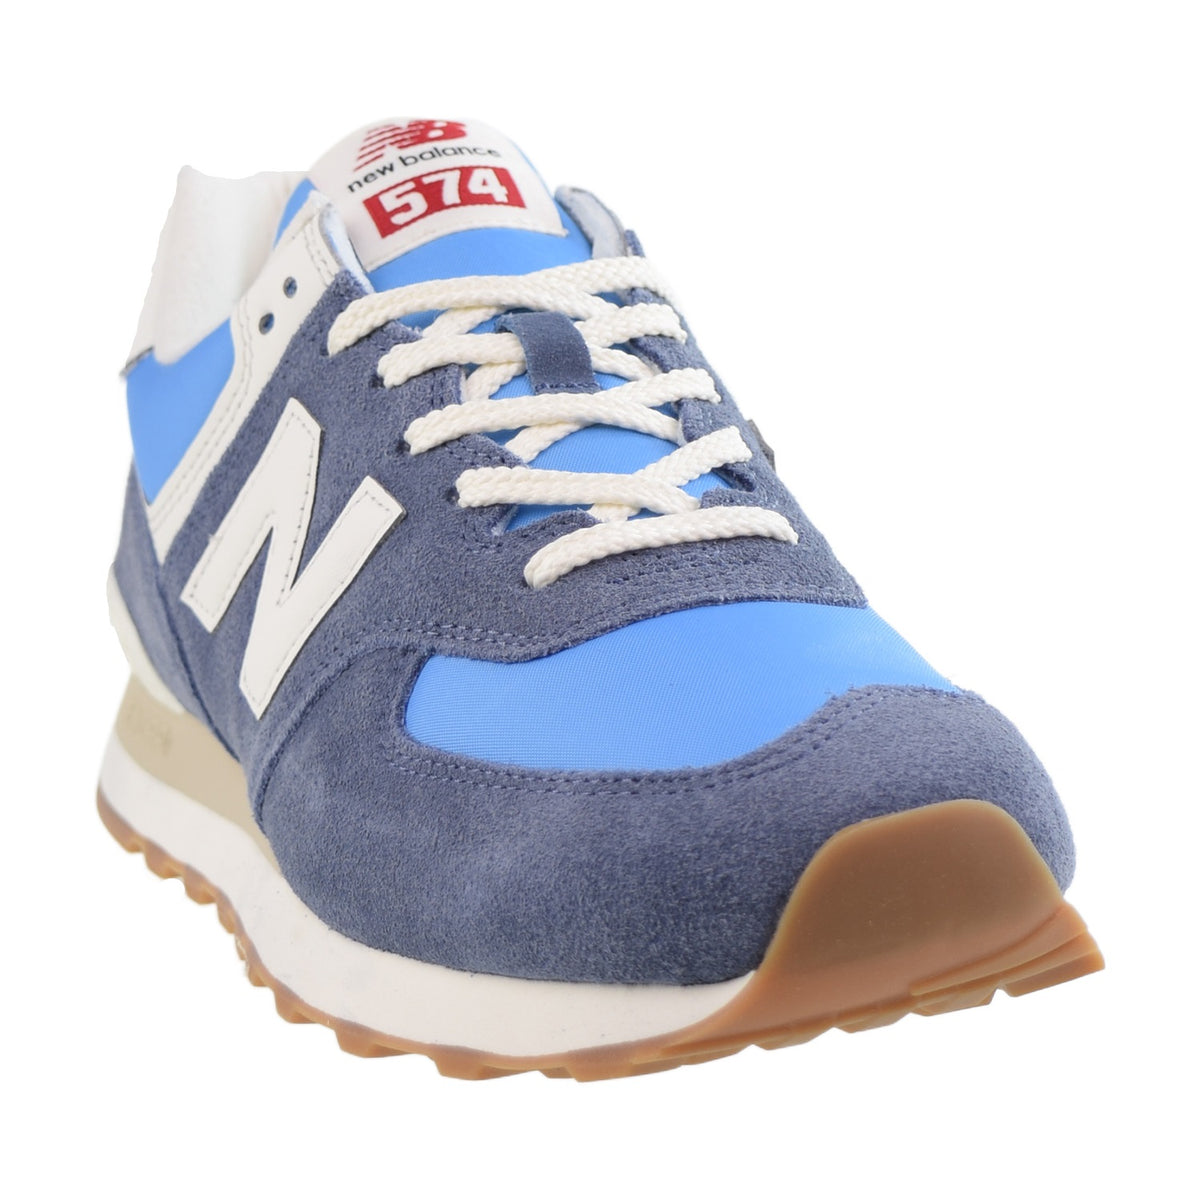 New Balance 574 Men's Shoes Blue-White Gum